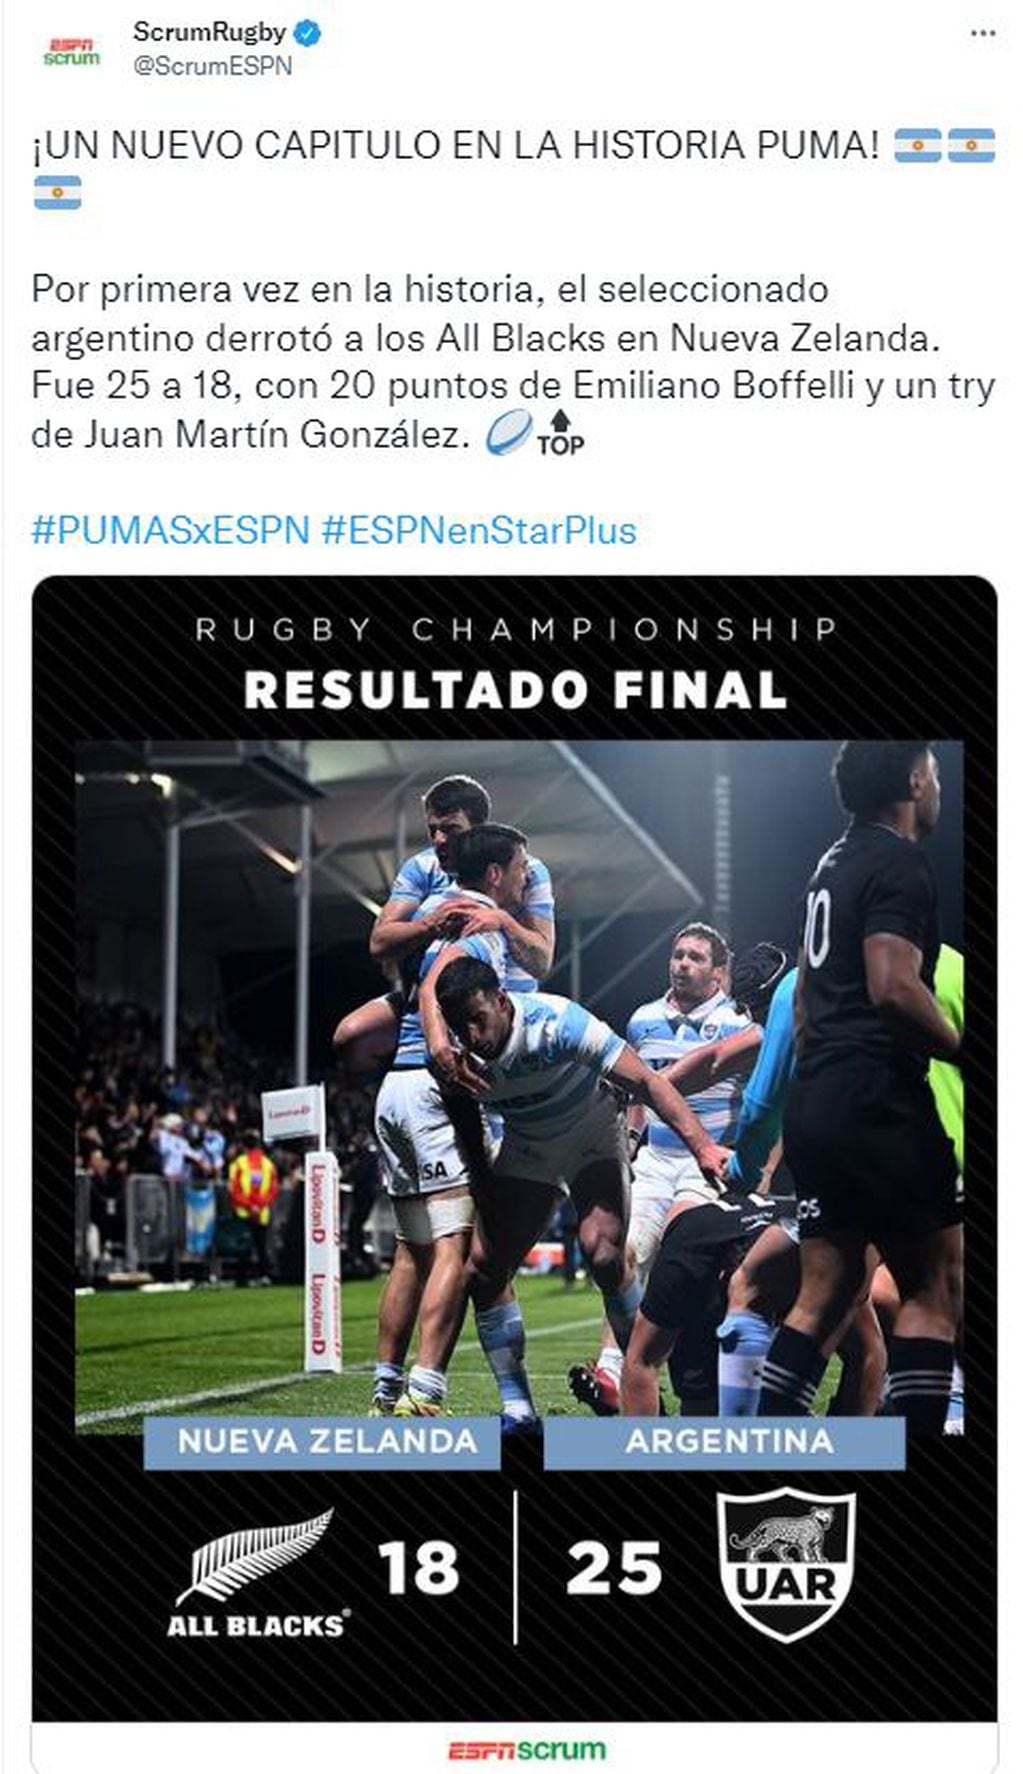 Juan Martín González, de 21 años y tercera línea de Marista Rugby, marcó un try clave para la histórica victoria de Los Pumas sobre los All Blacks.